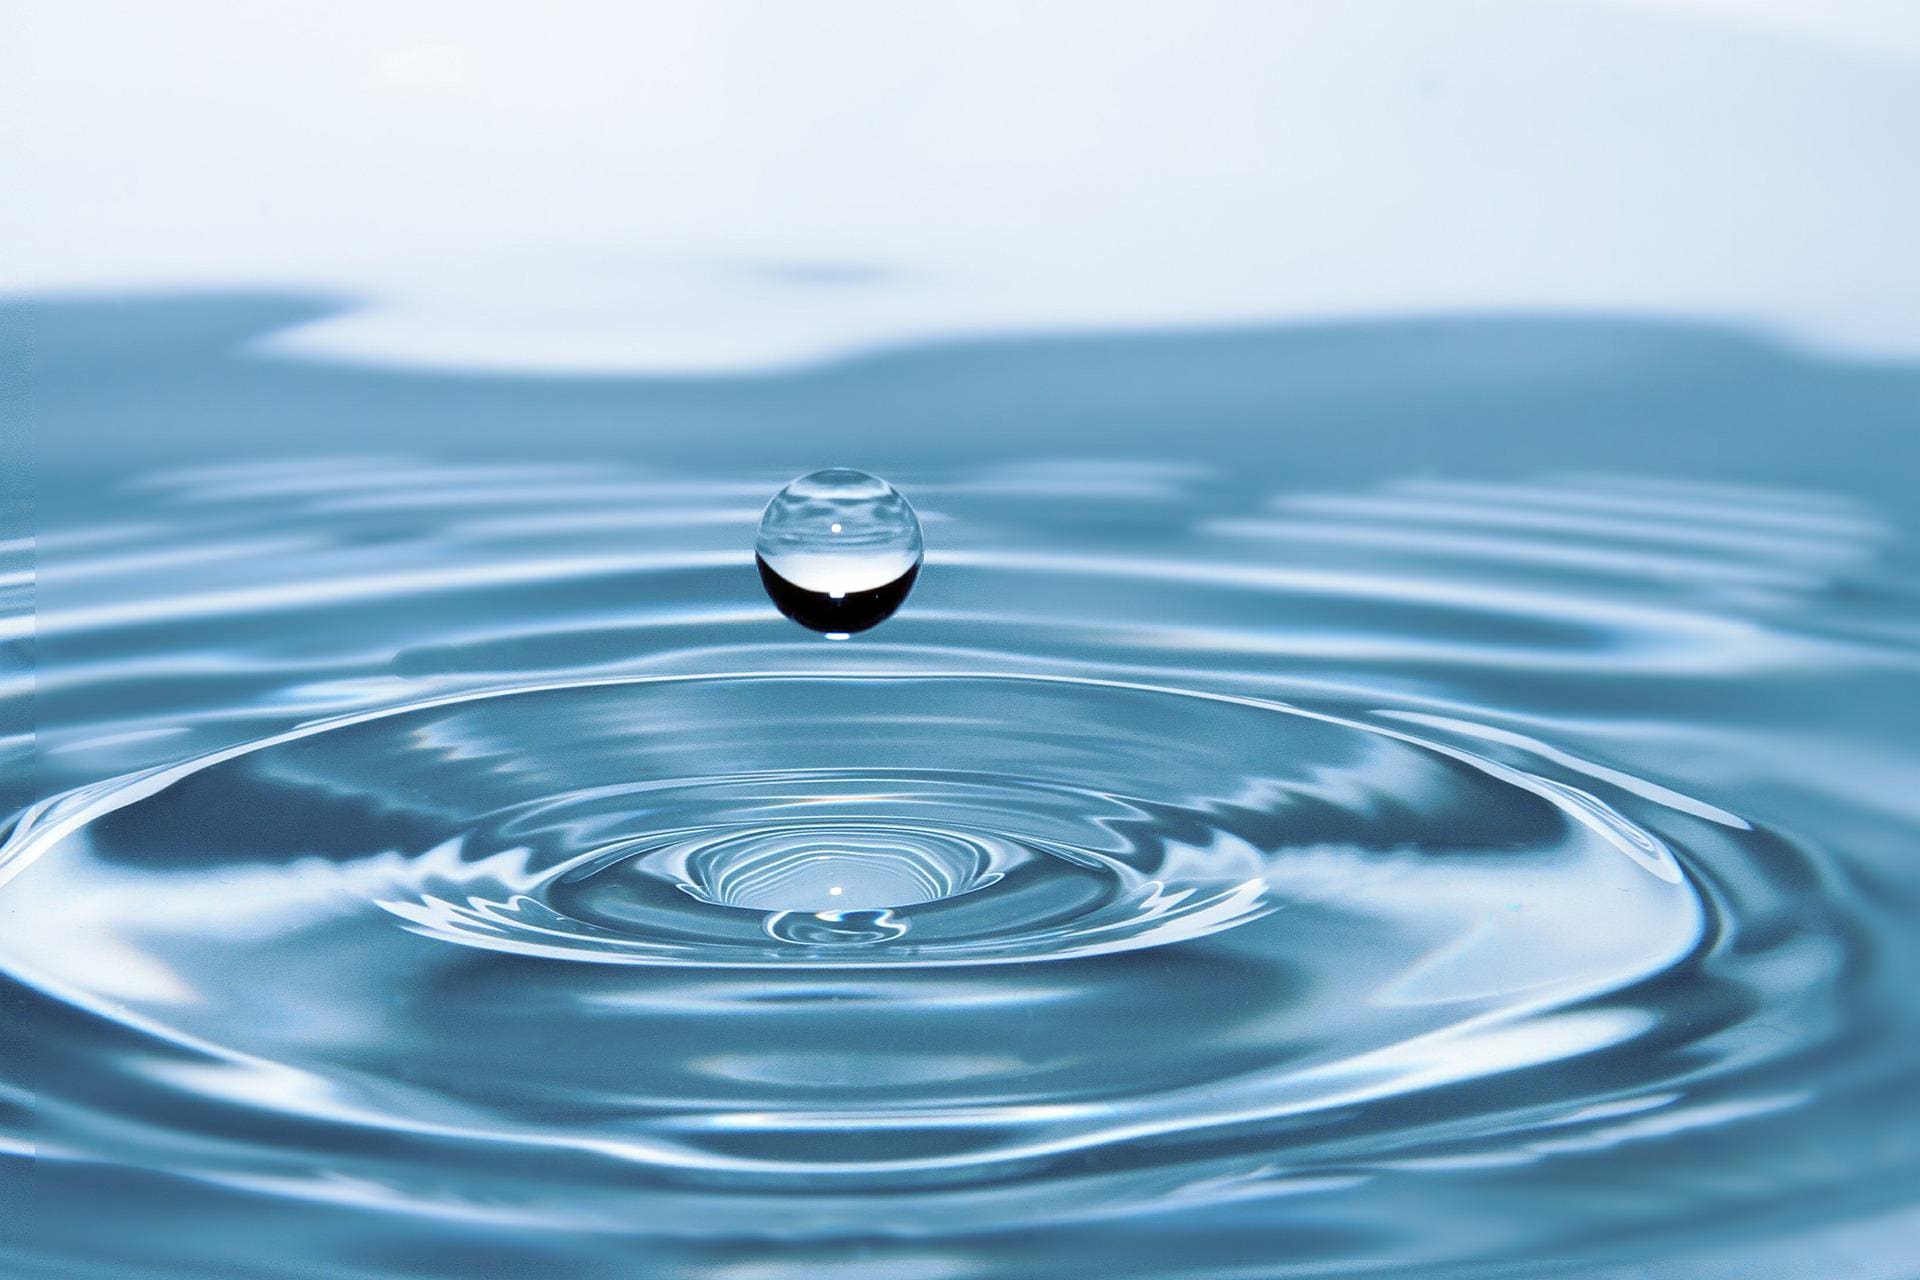 Wassertropfen - Bild von rony michaud auf Pixabay